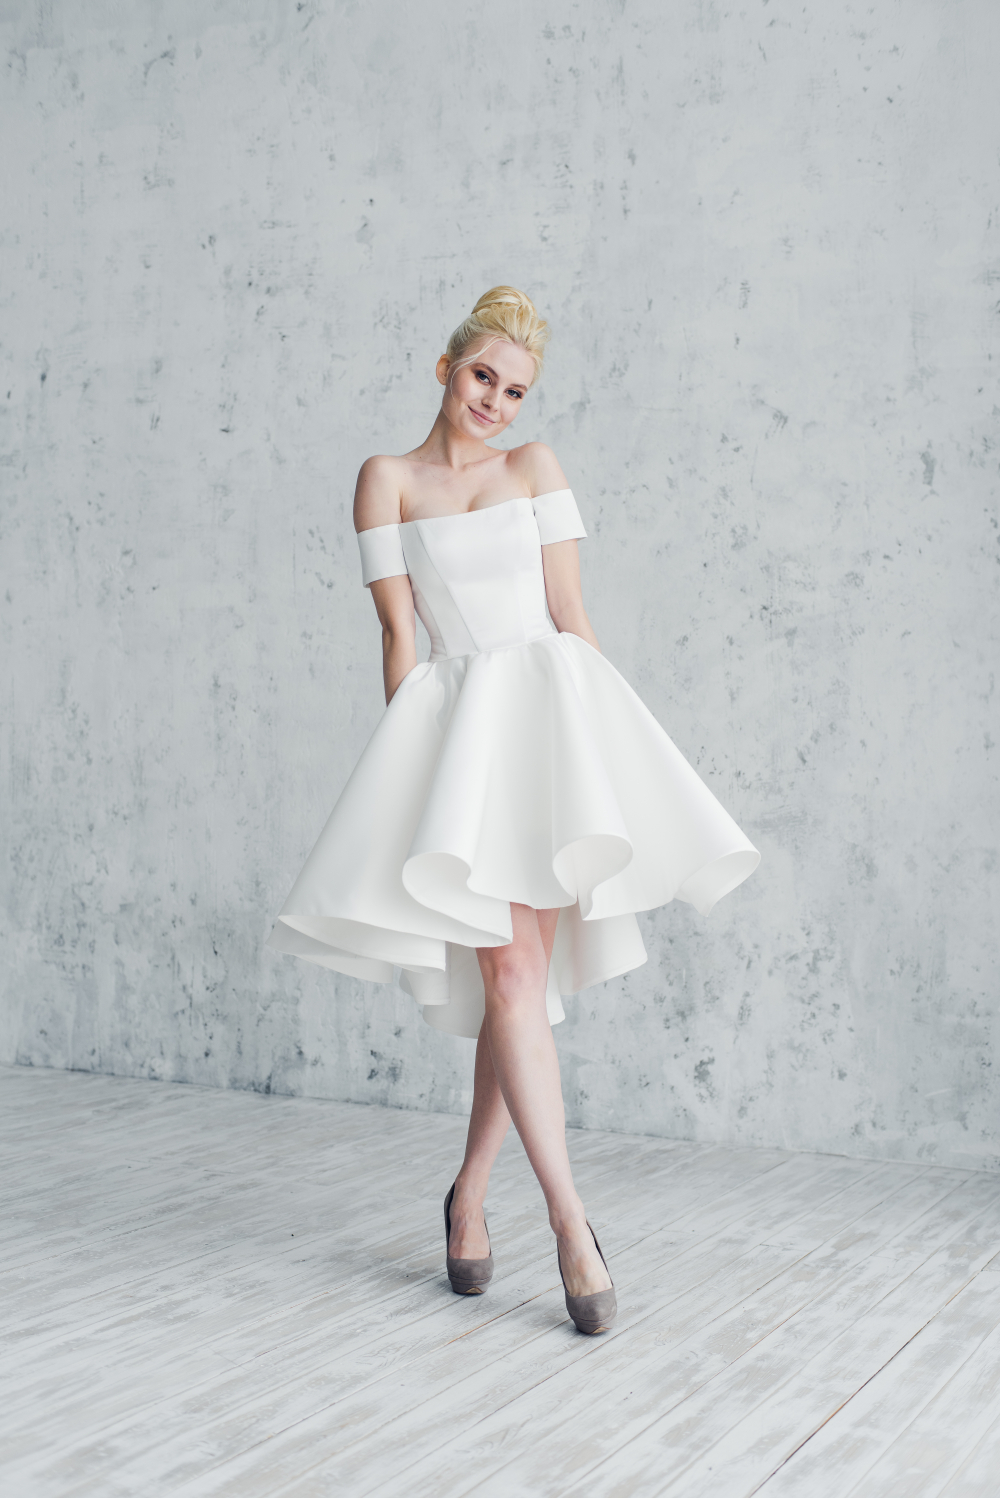 Купить платья Белые в шоуруме платьев в Санкт-Петербурге по выгодной цене